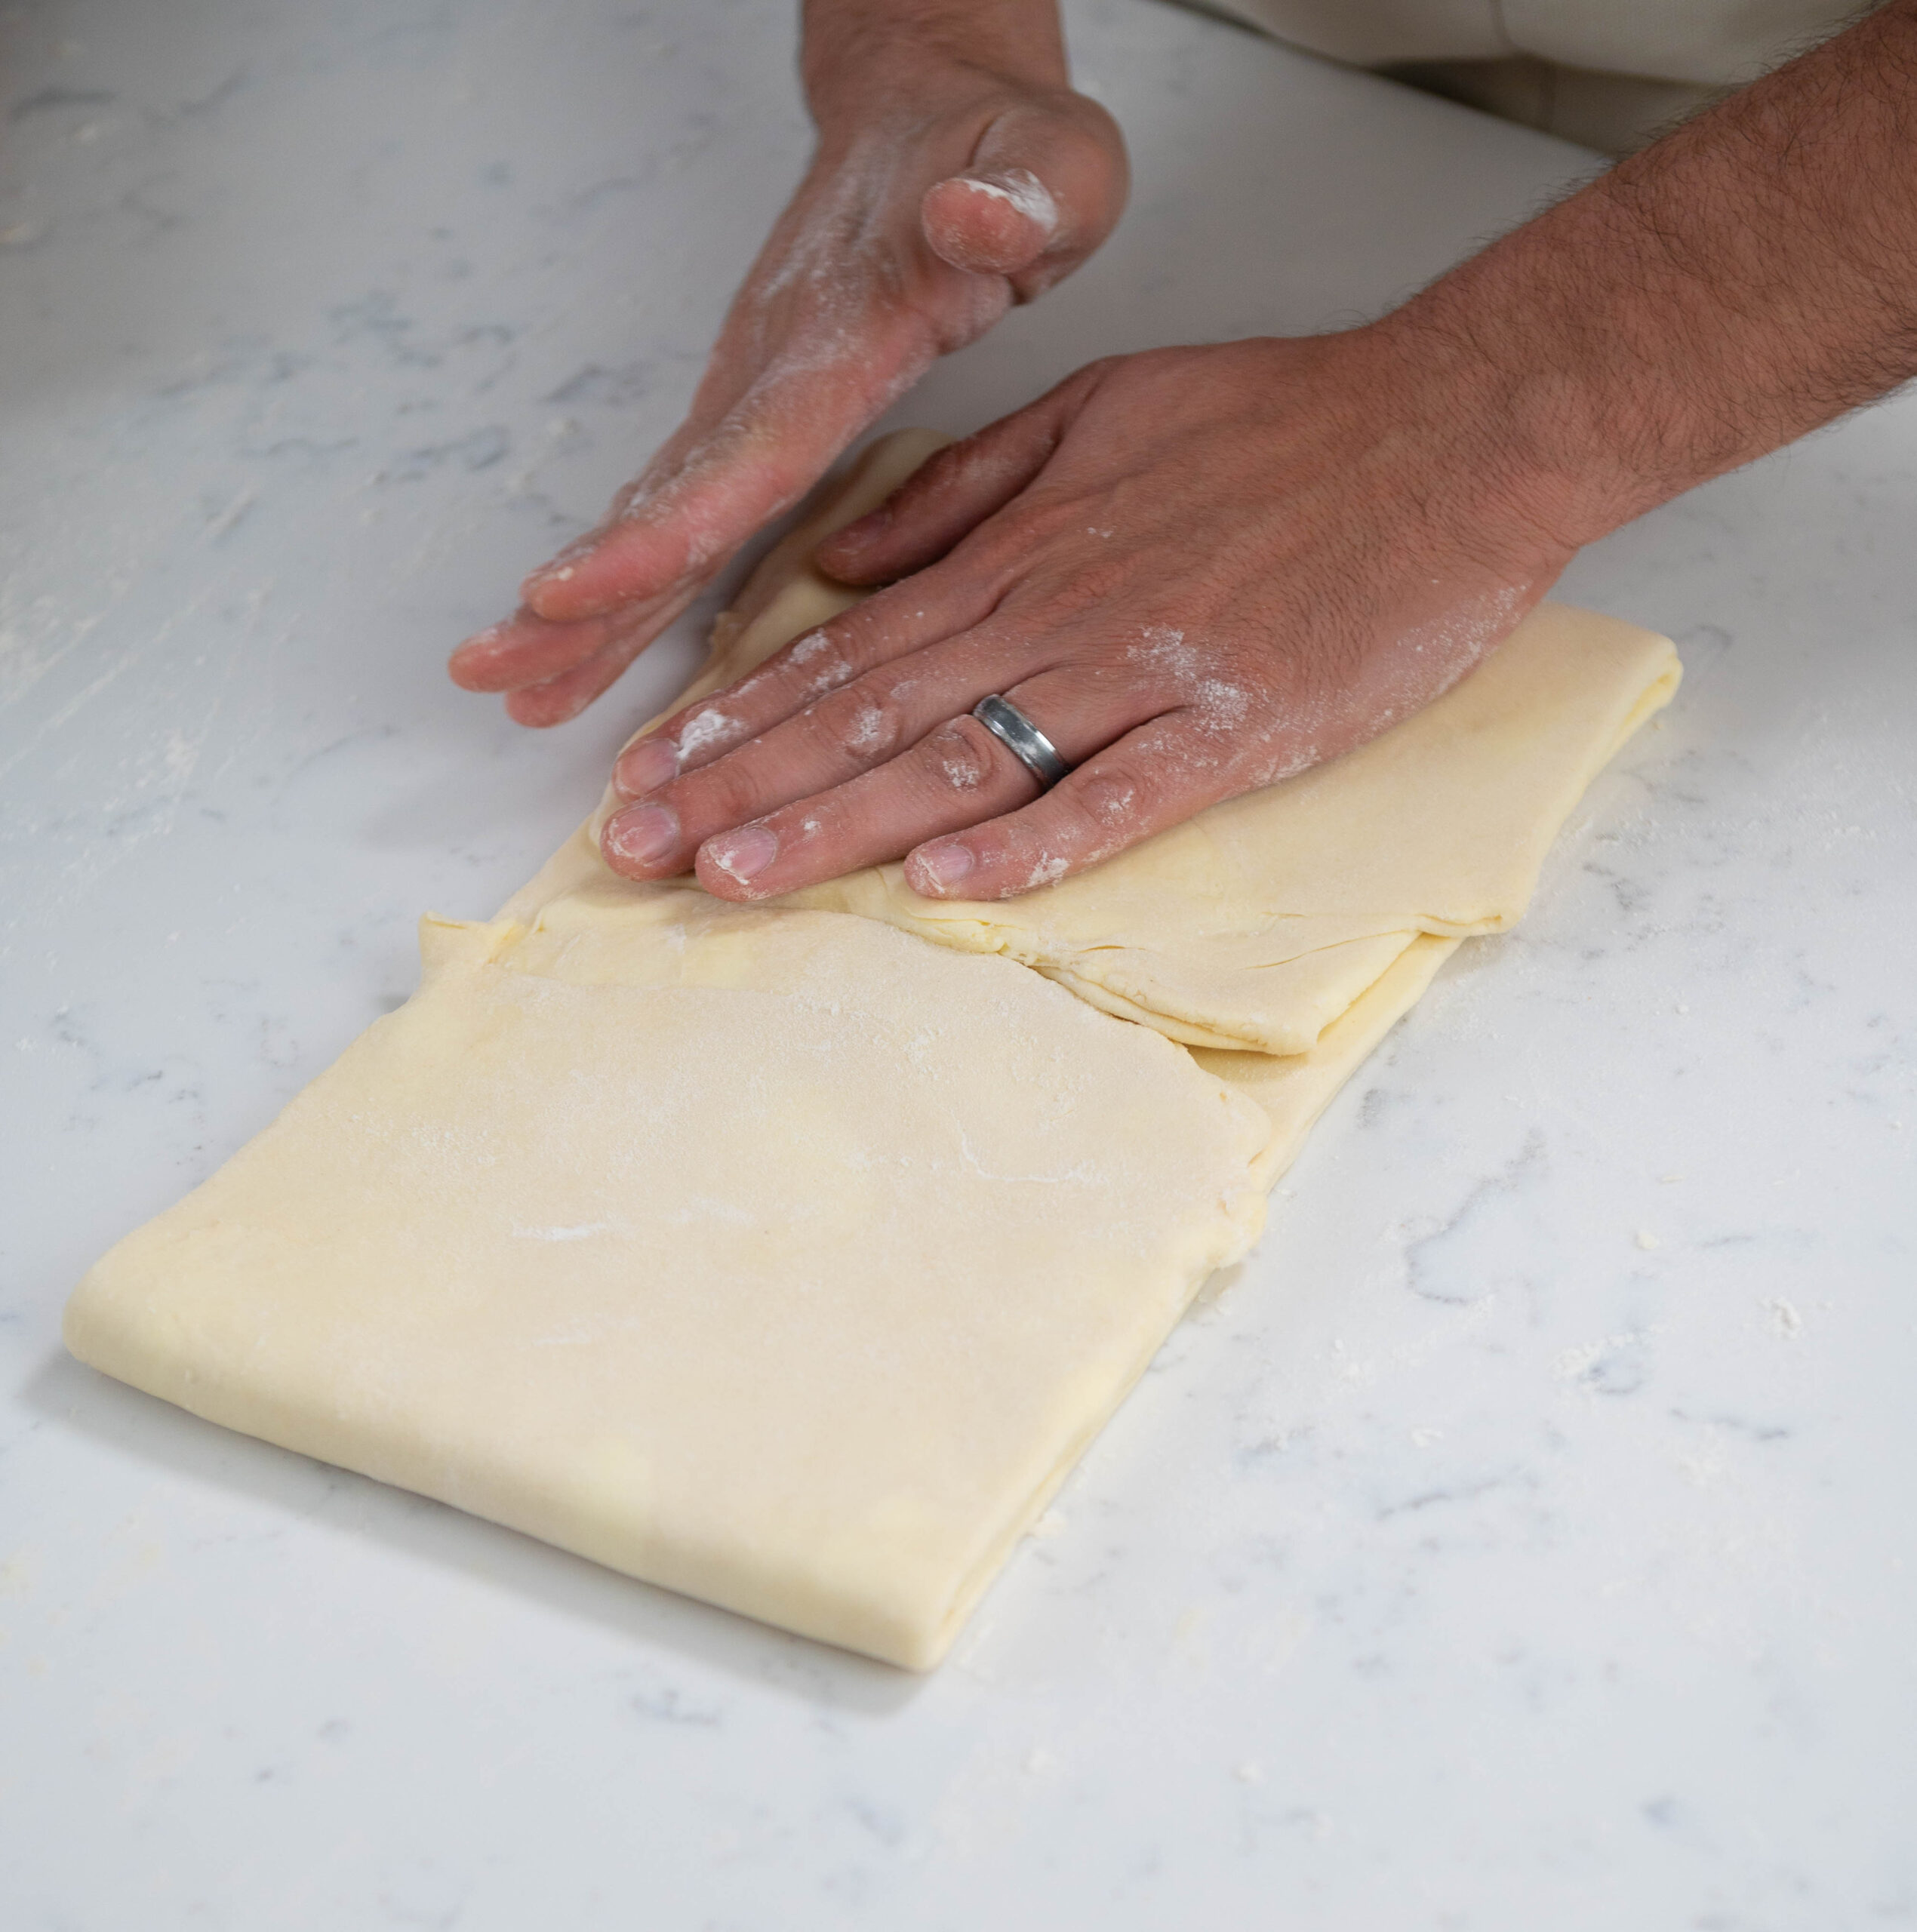 hands folding dough.